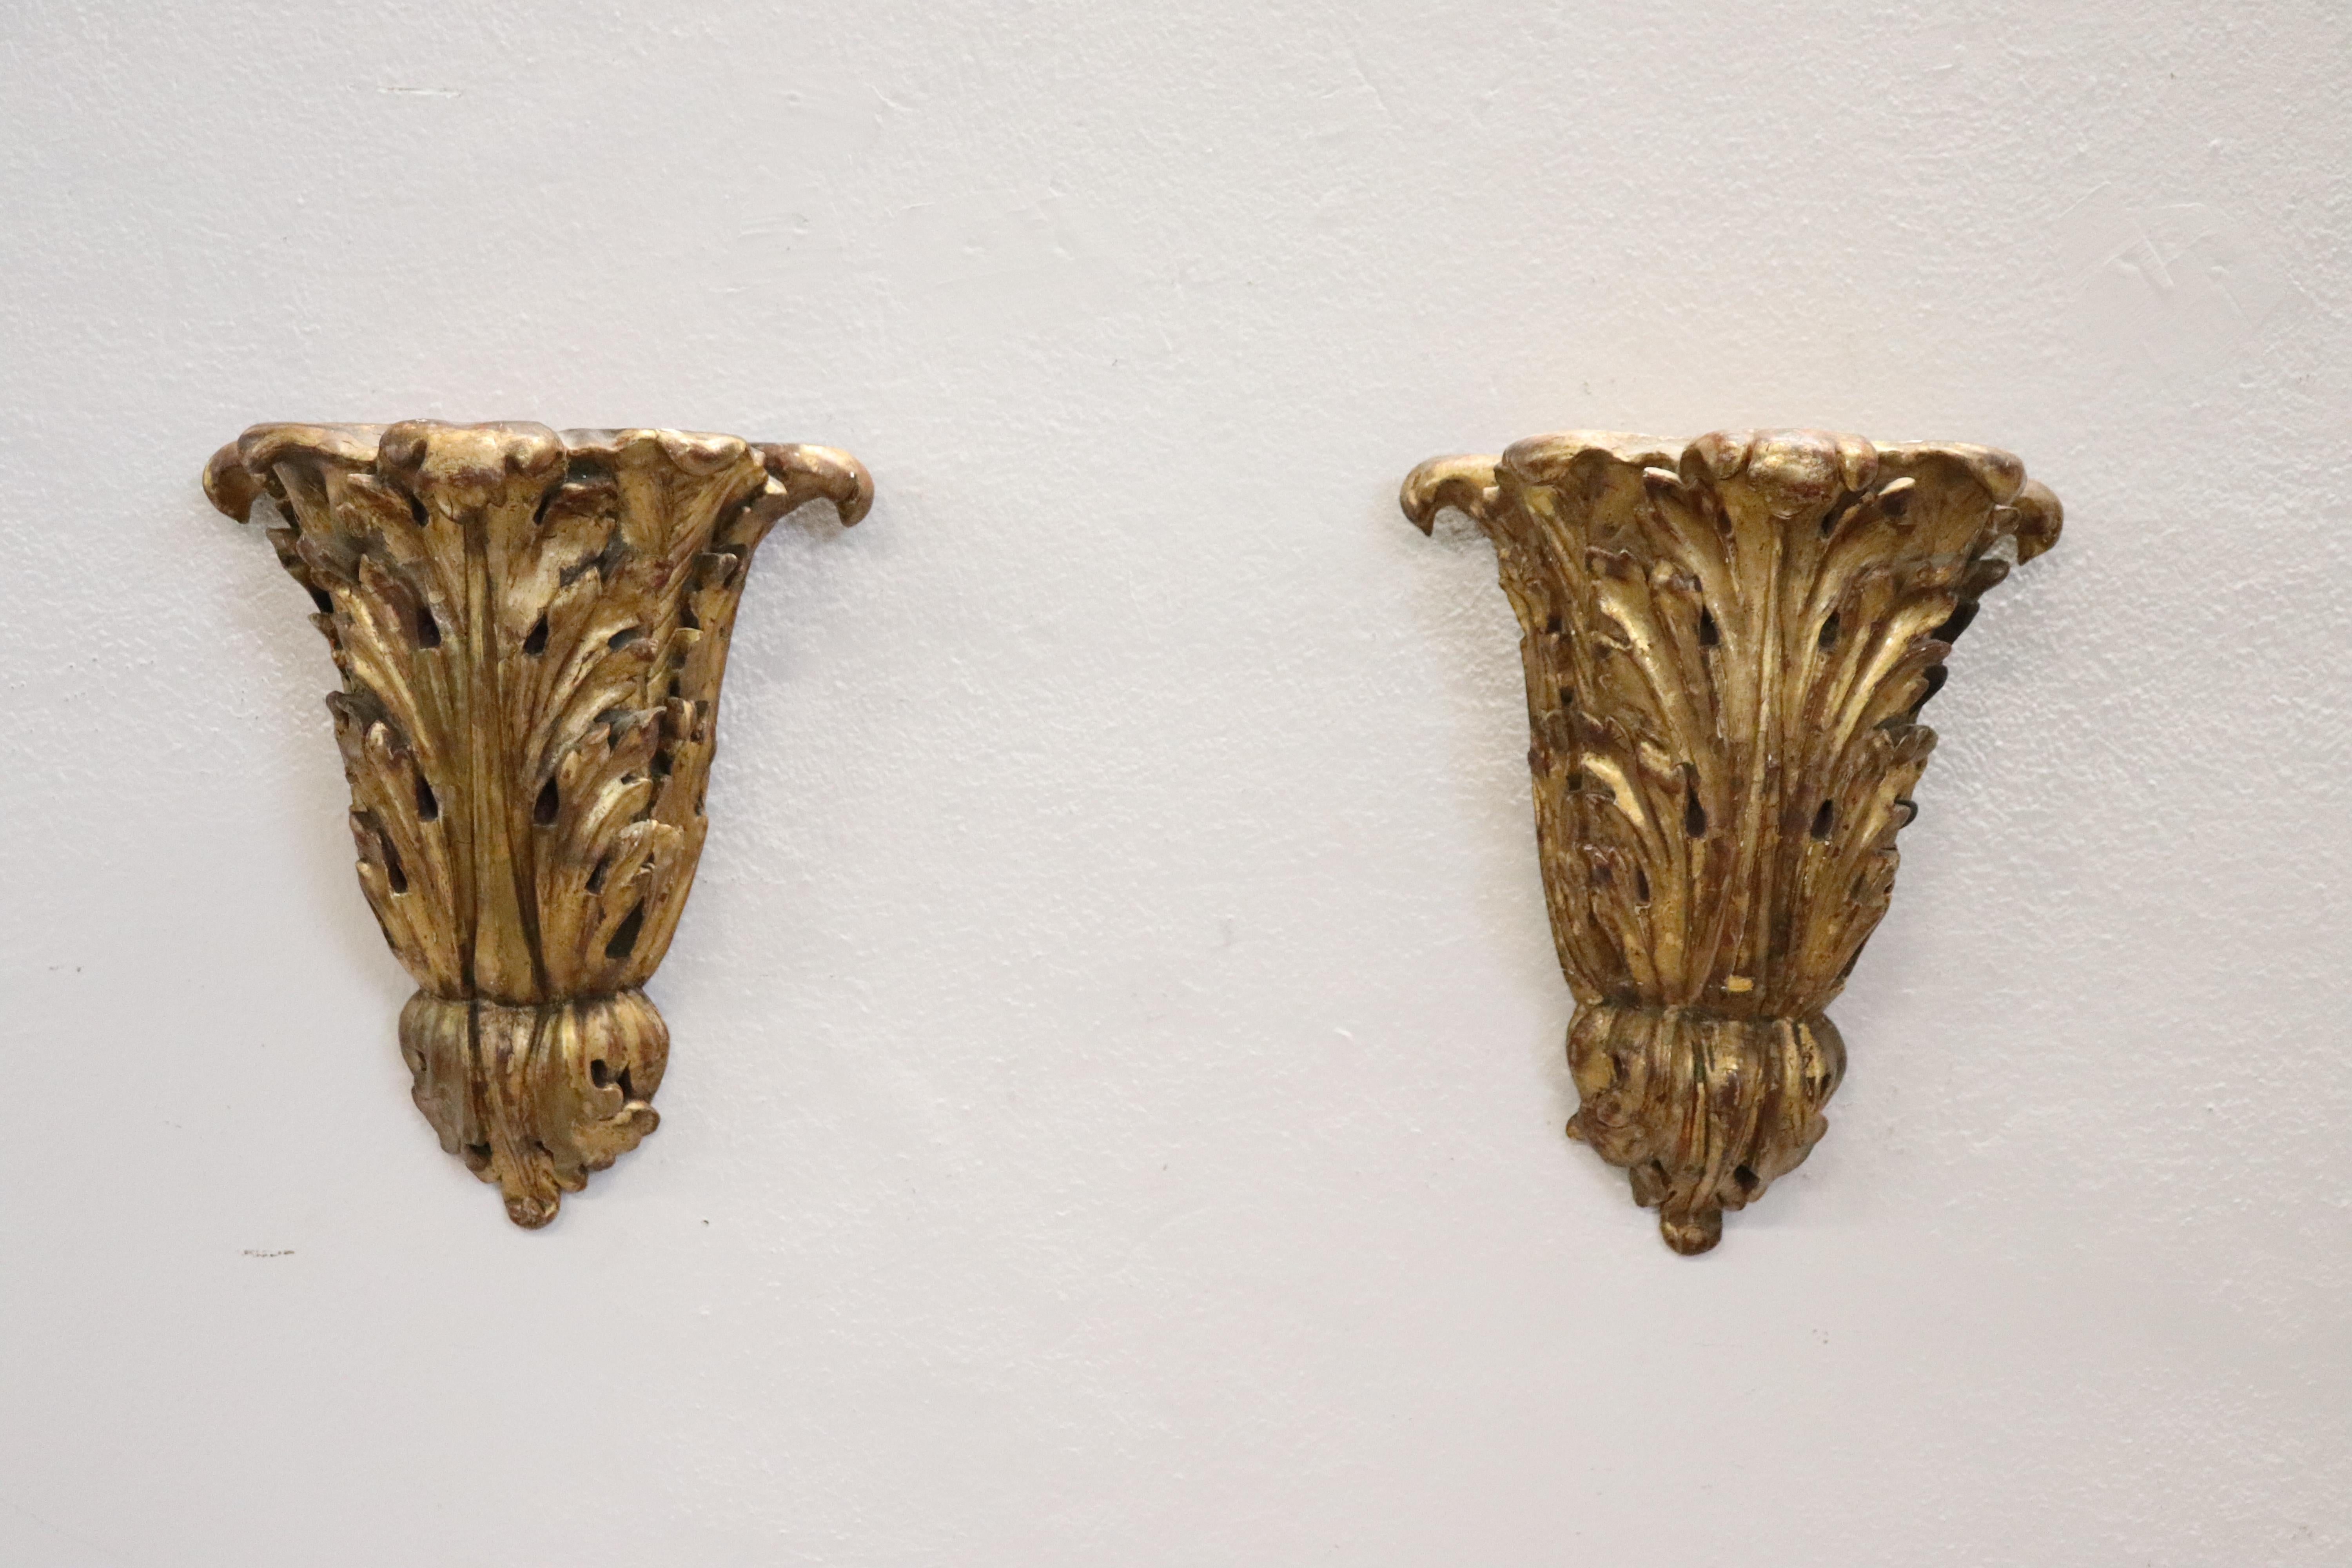 Belle paire de frises anciennes en bois sculpté et doré du 19ème siècle. De grandes feuilles d'acanthe sont sculptées dans le bois. Dans de bonnes conditions antiques.